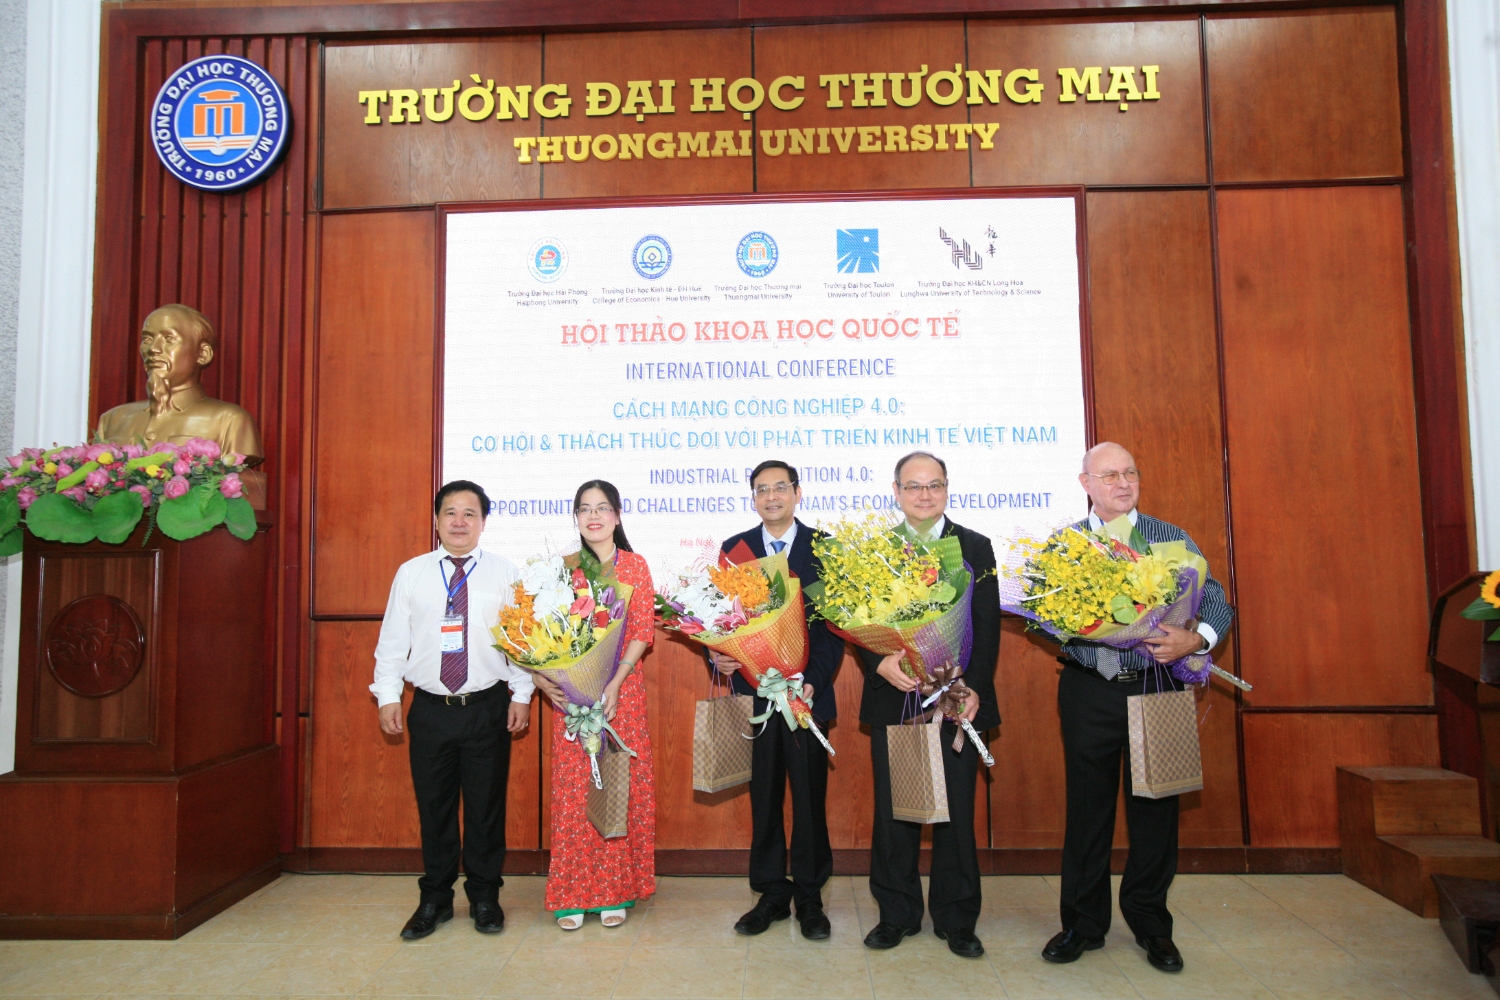 Hội thảo khoa học quốc tế với chủ đề “Cách mạng công nghiệp 4.0: Cơ hội và thách thức đối với phát triển kinh tế Việt Nam”